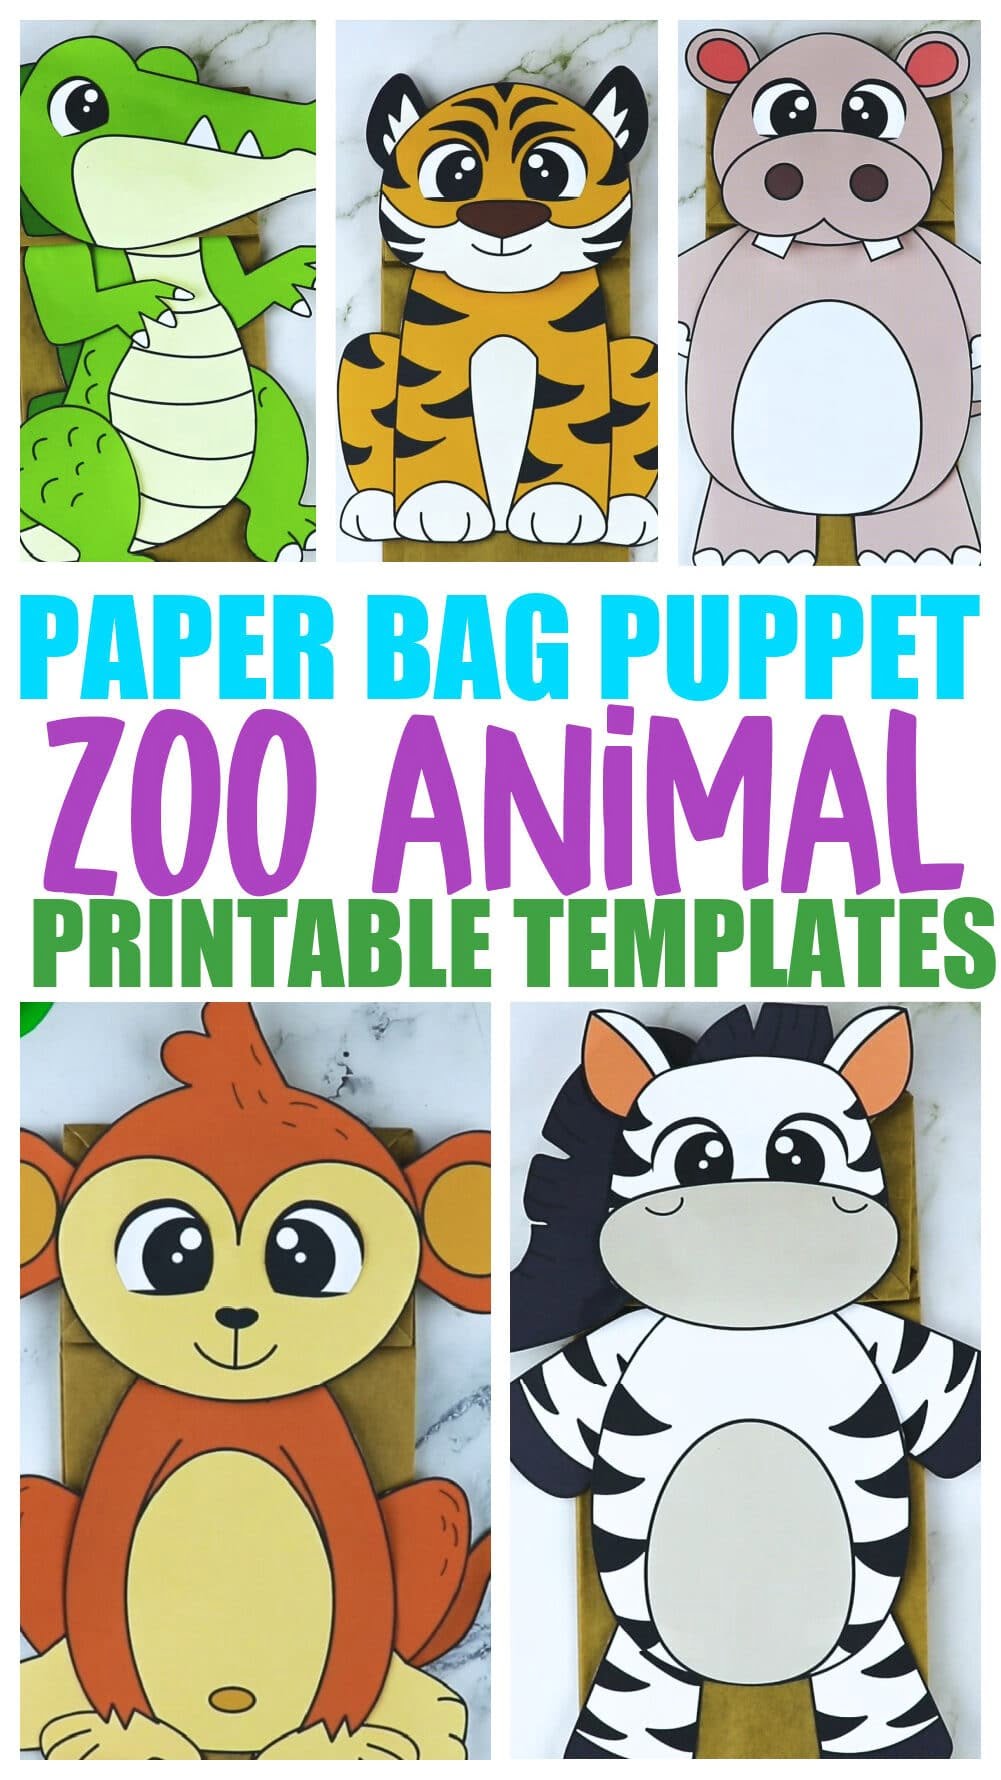 Free Printable Zoo Animal Templates